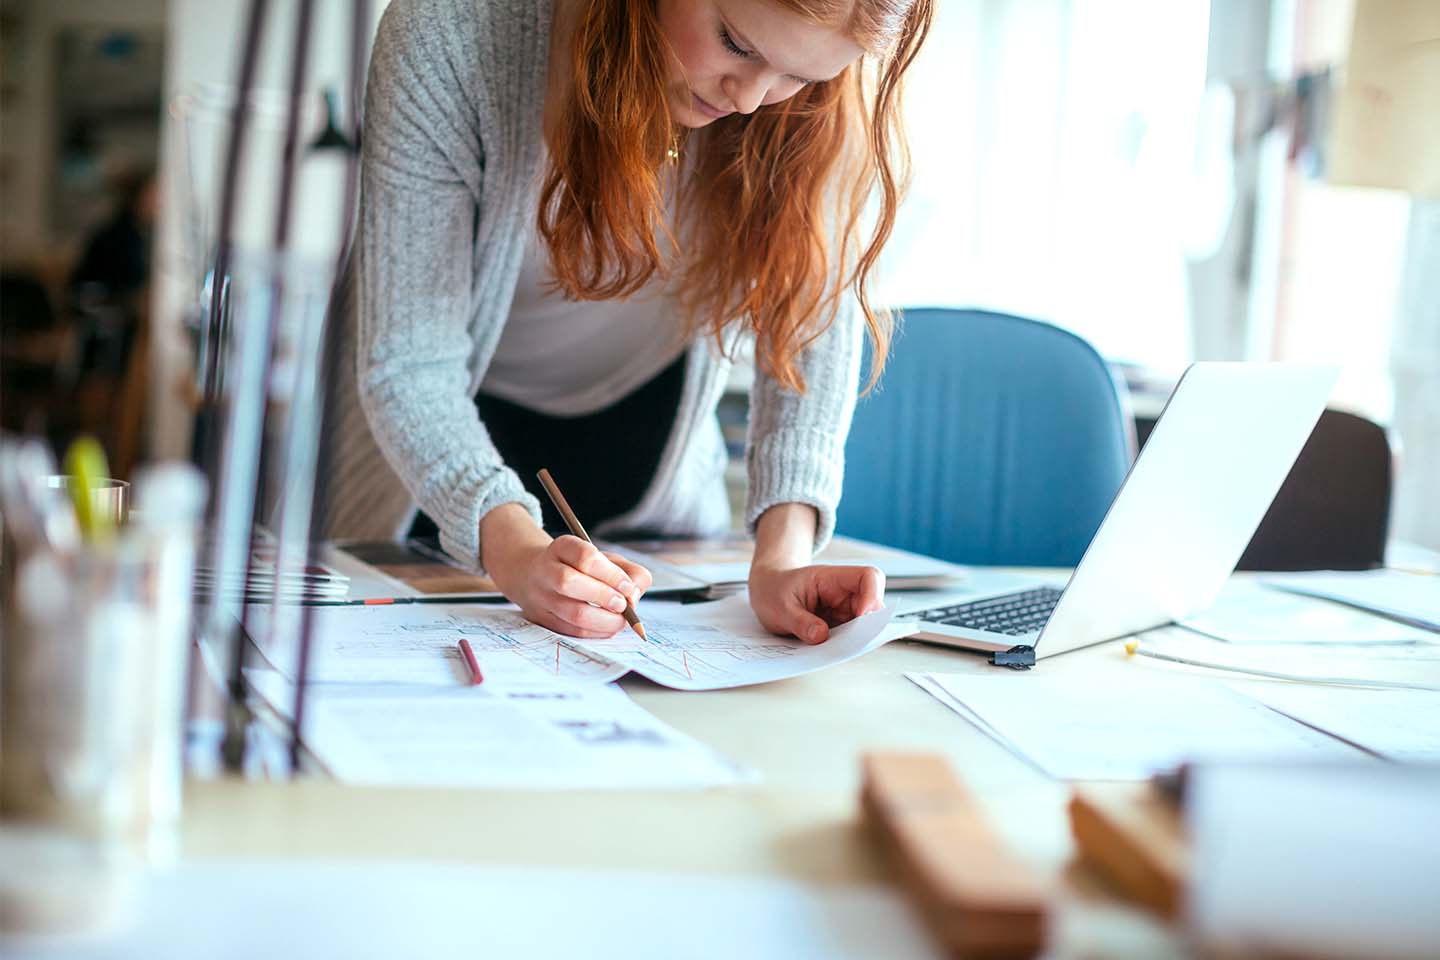 Eine junge Frau mit langen roten Haaren beugt sich über ihren Schreibtisch. Vor ihr befinden sich mehrere große Blätter mit Diagrammen, neben ihr steht ein moderner Laptop. Sie zeichnet mit Bleistift auf einen der Bögen.